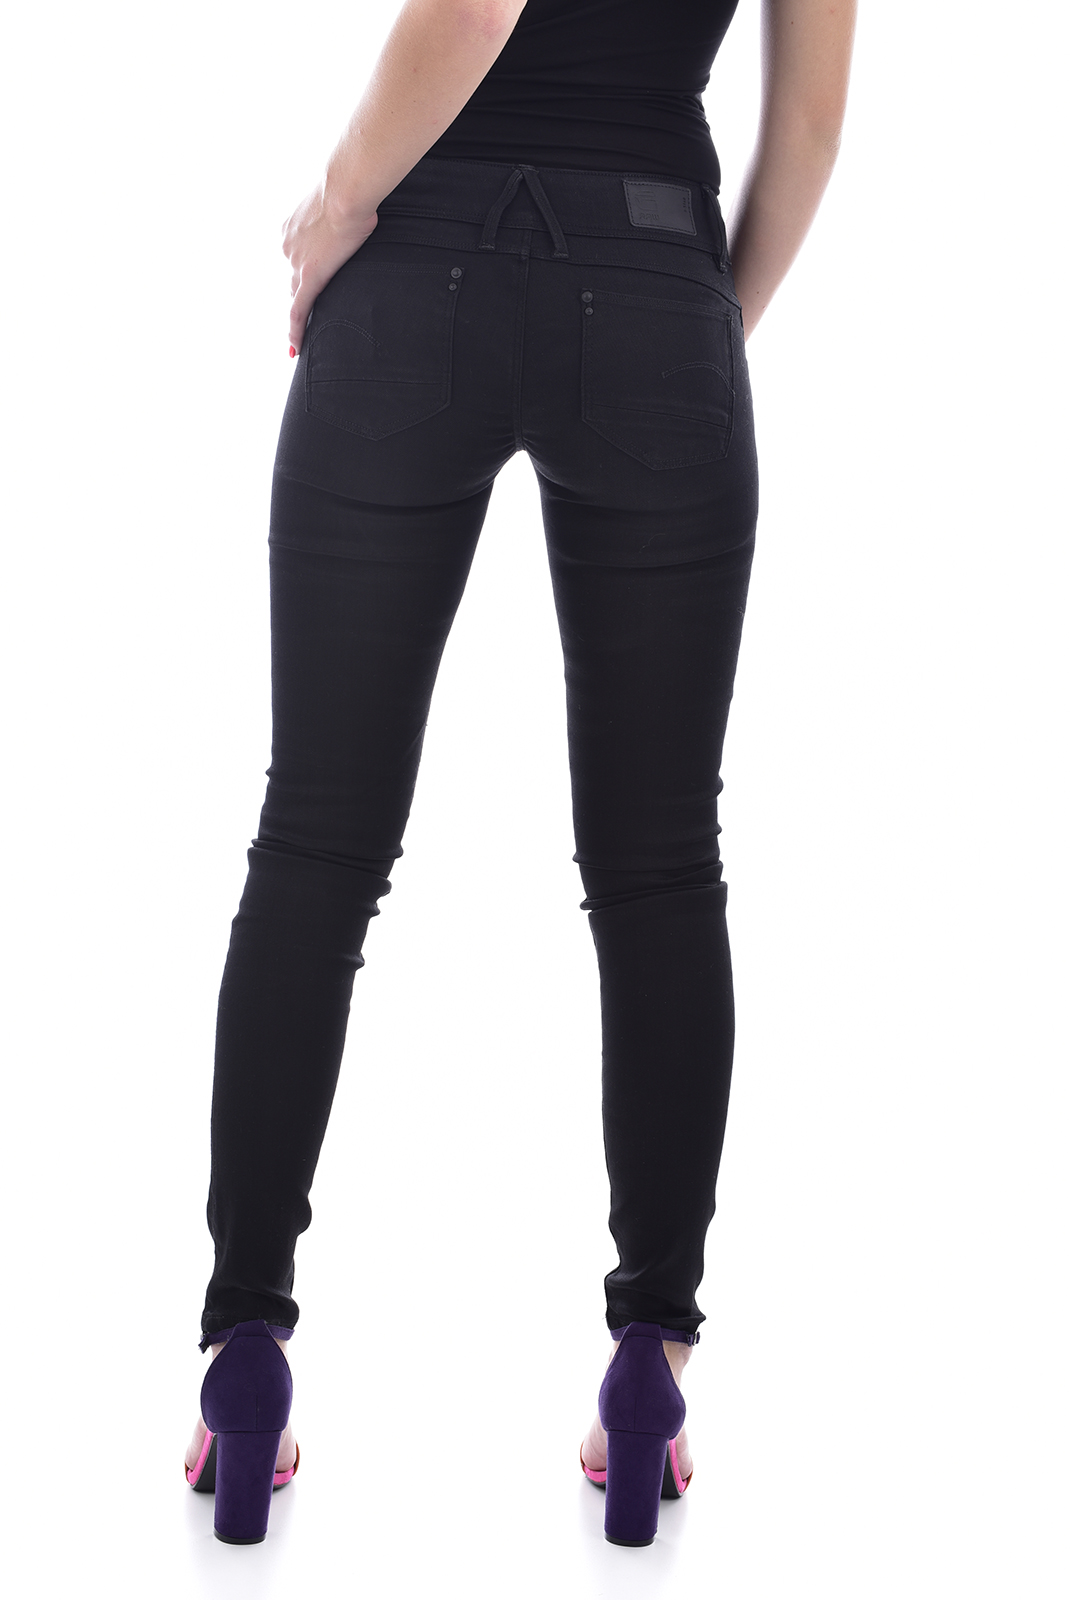 Jeans denim noir slim G-star - 60885.6009.082